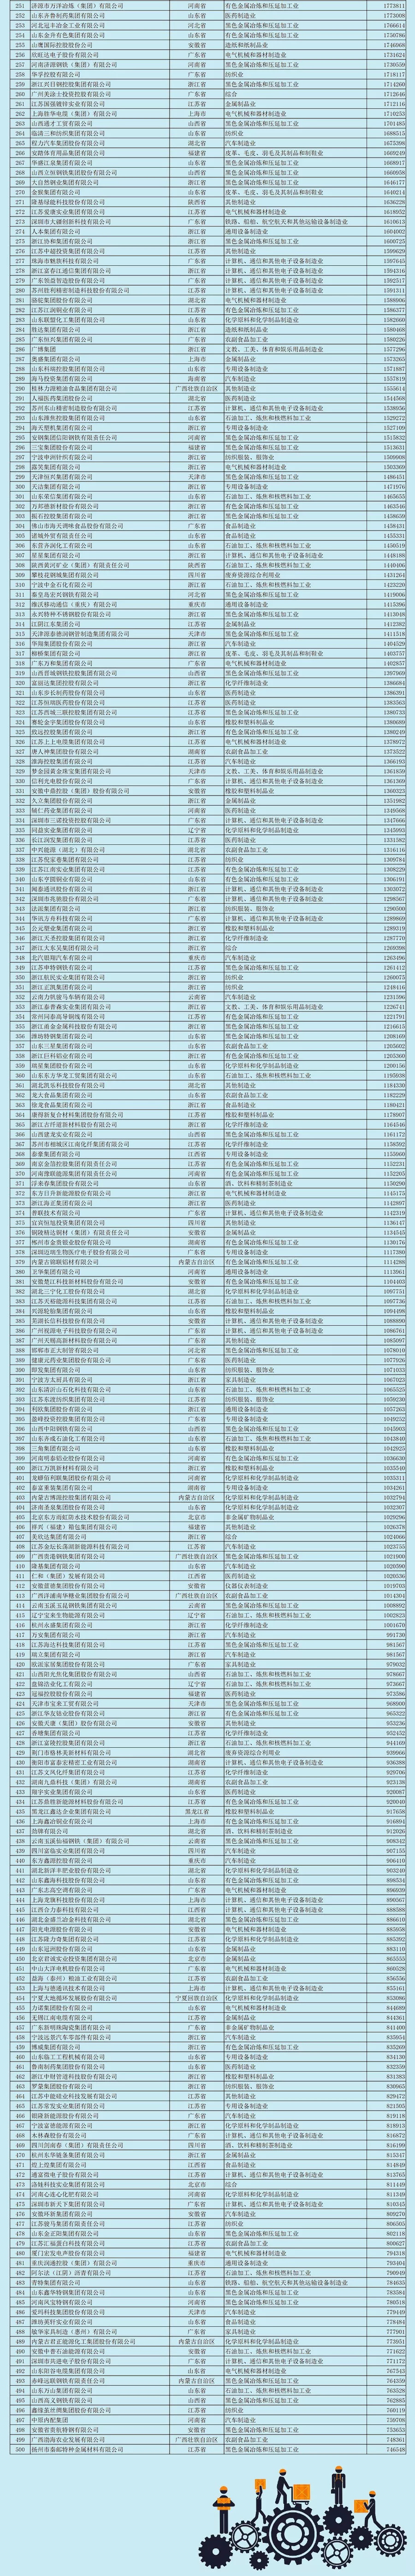 2018中国民营企业制造业500强榜单